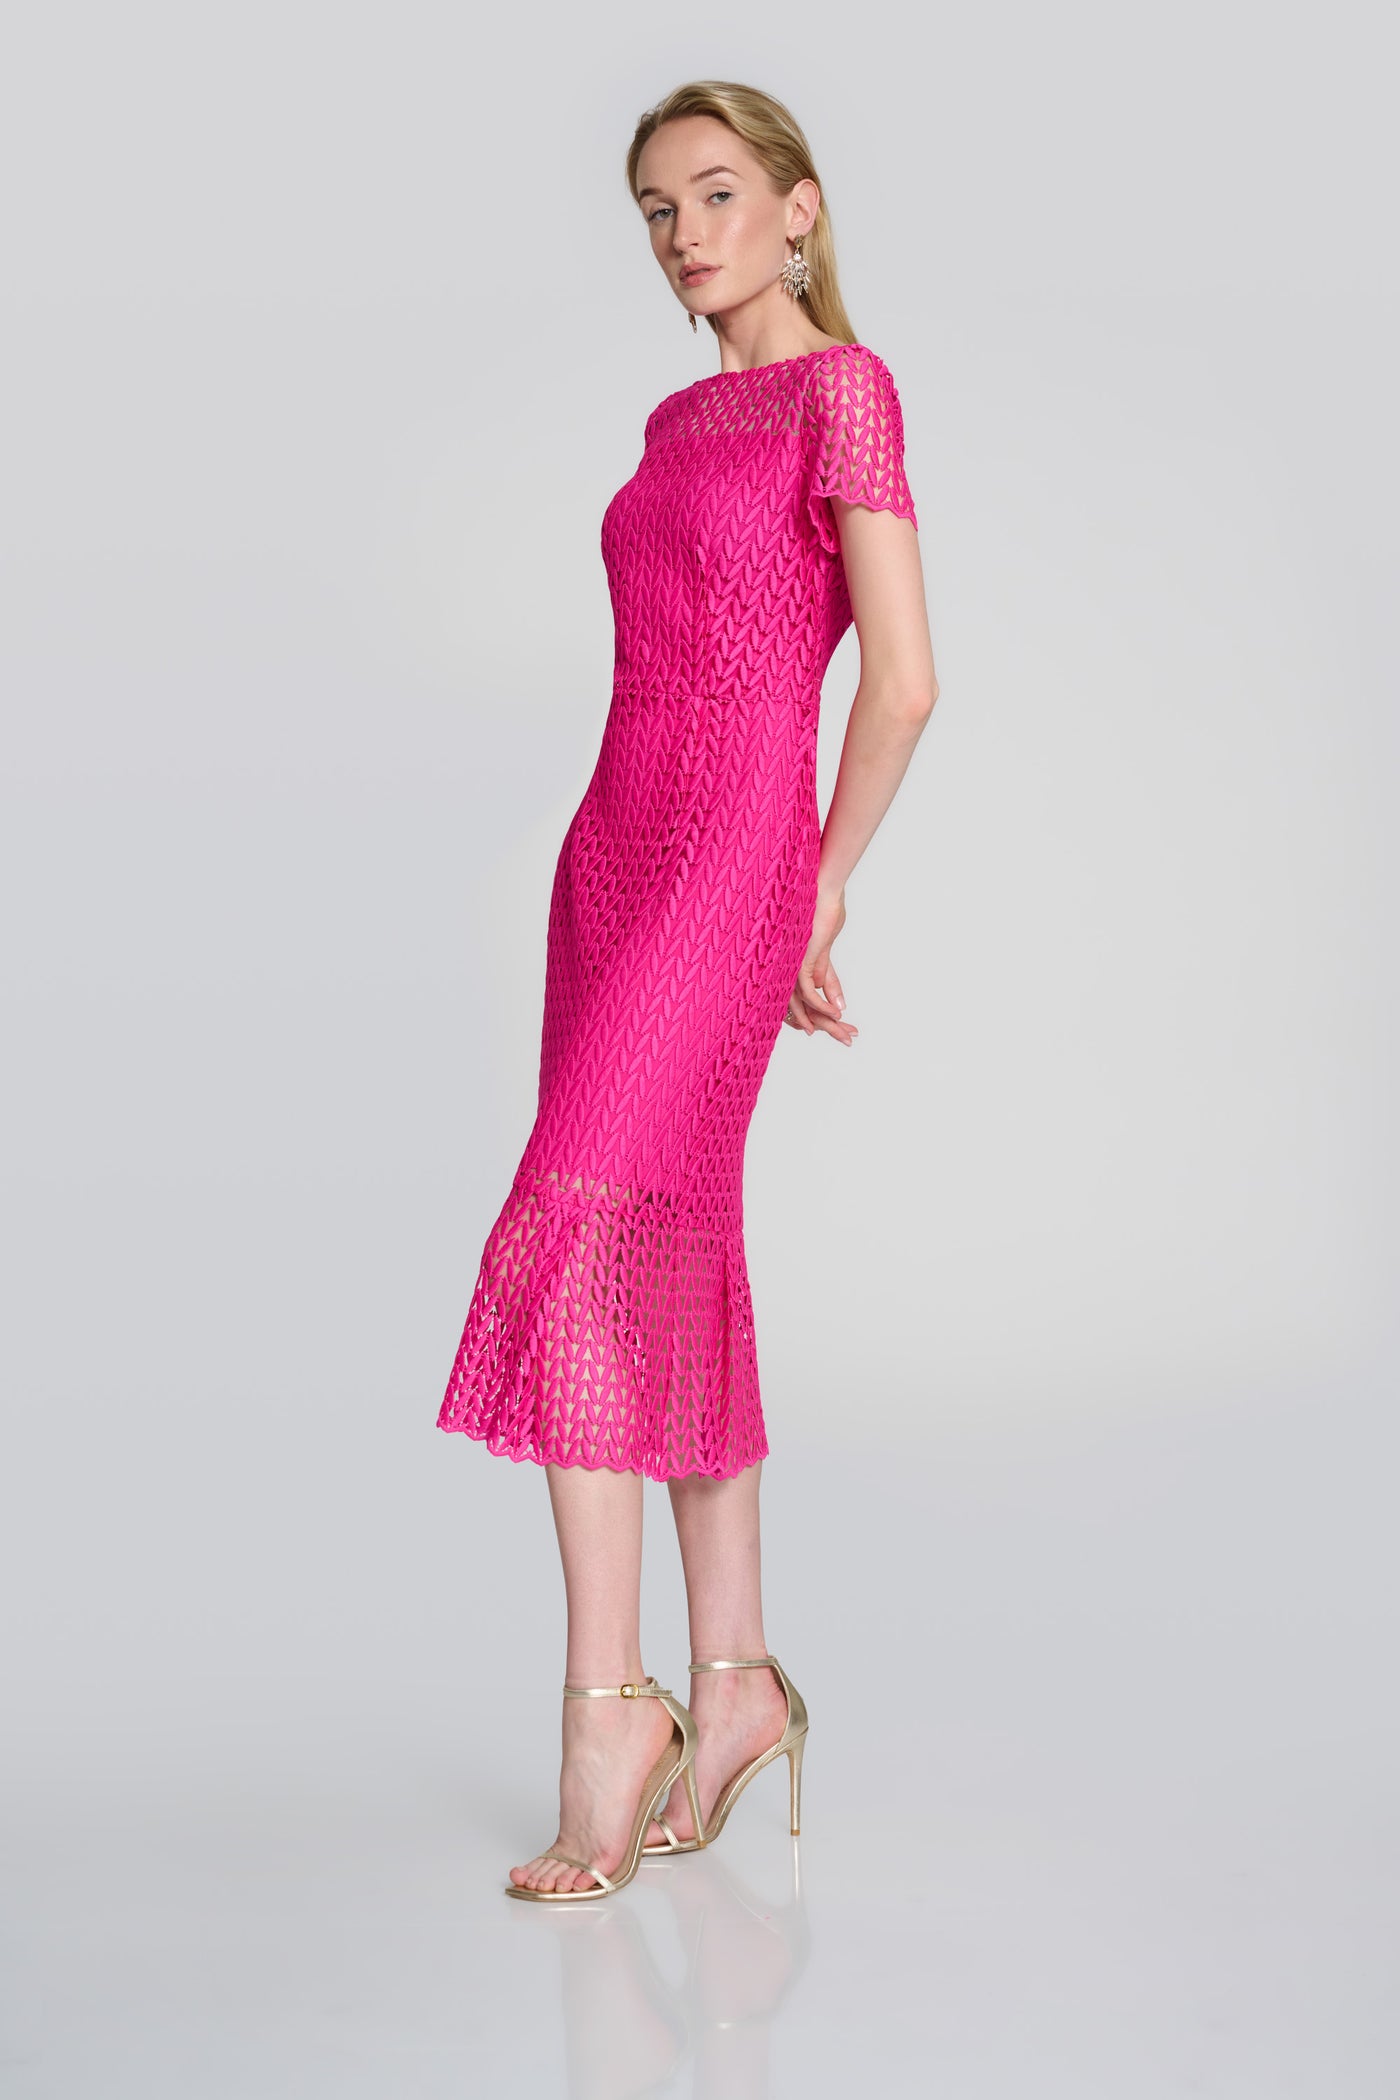 Joseph Ribkoff Pink Guipure Lace Flounce Dress